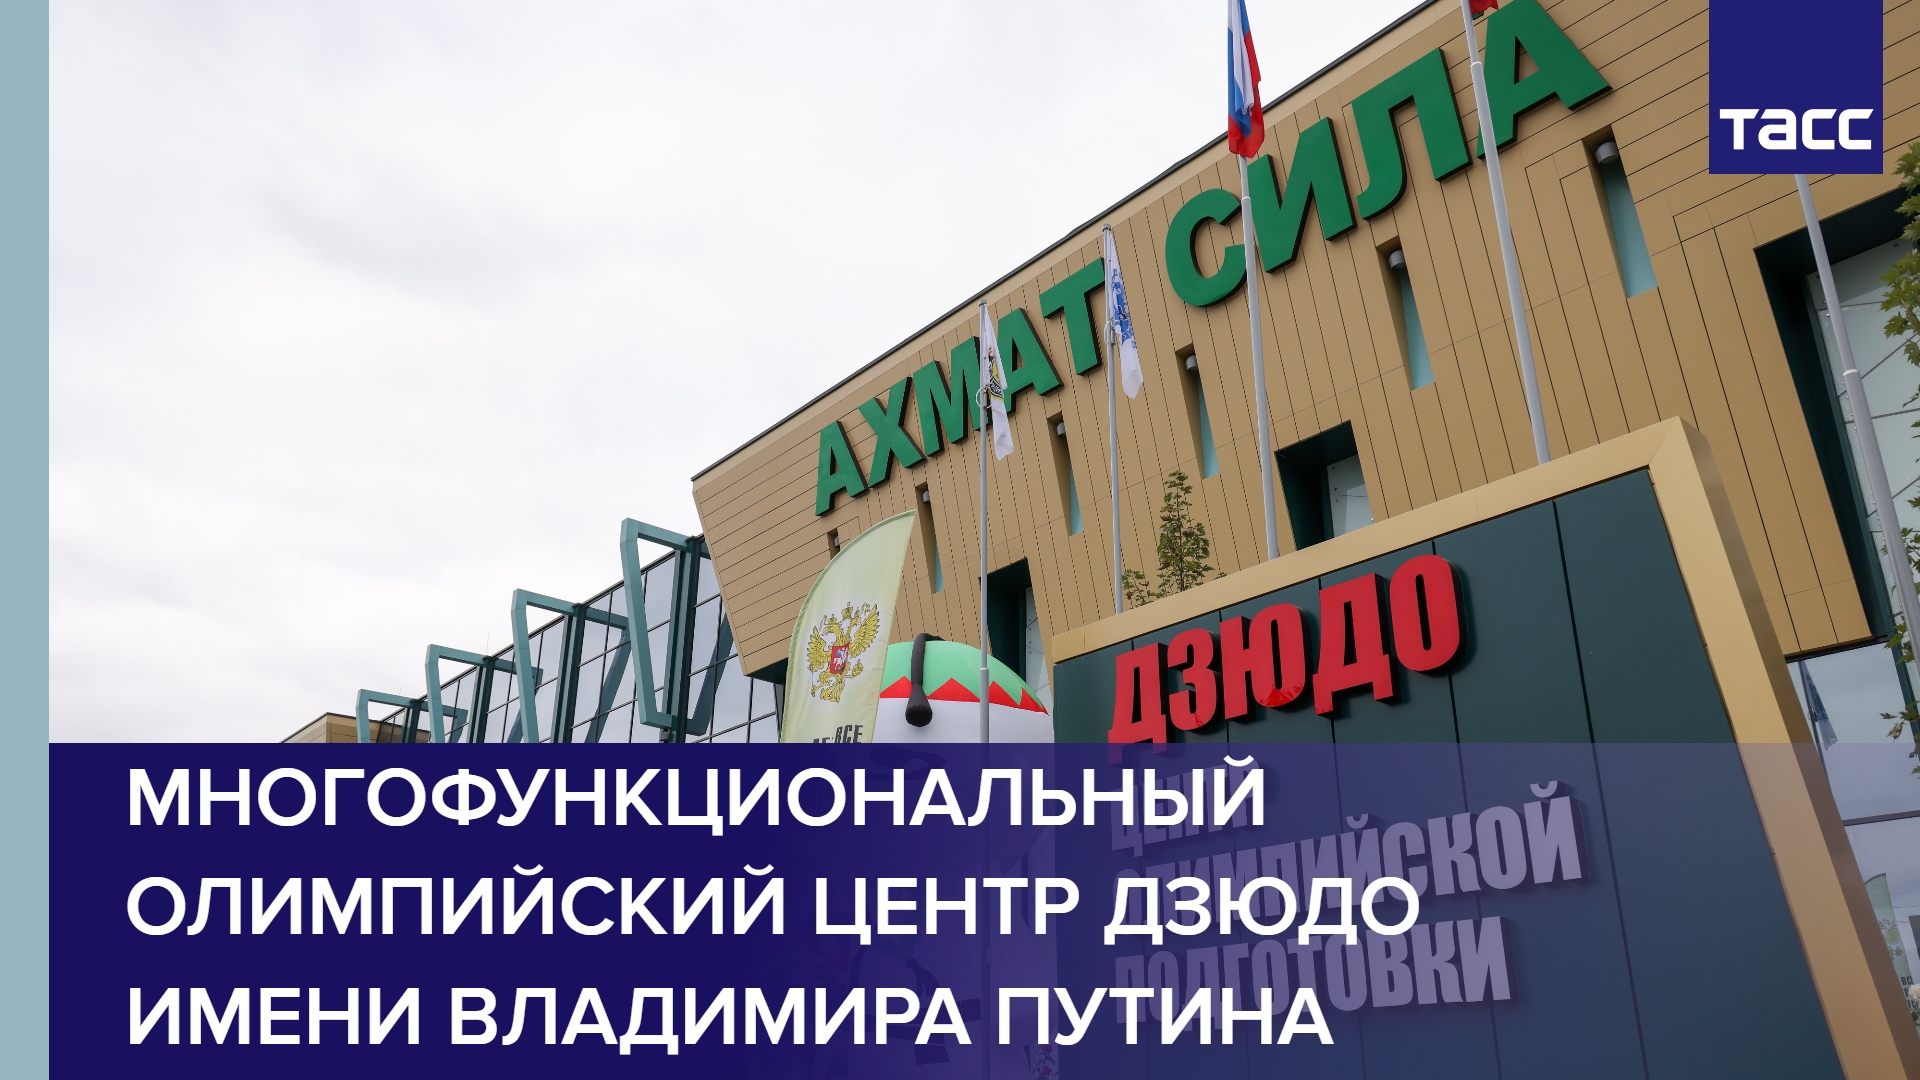 Многофункциональный олимпийский центр дзюдо имени Владимира Путина